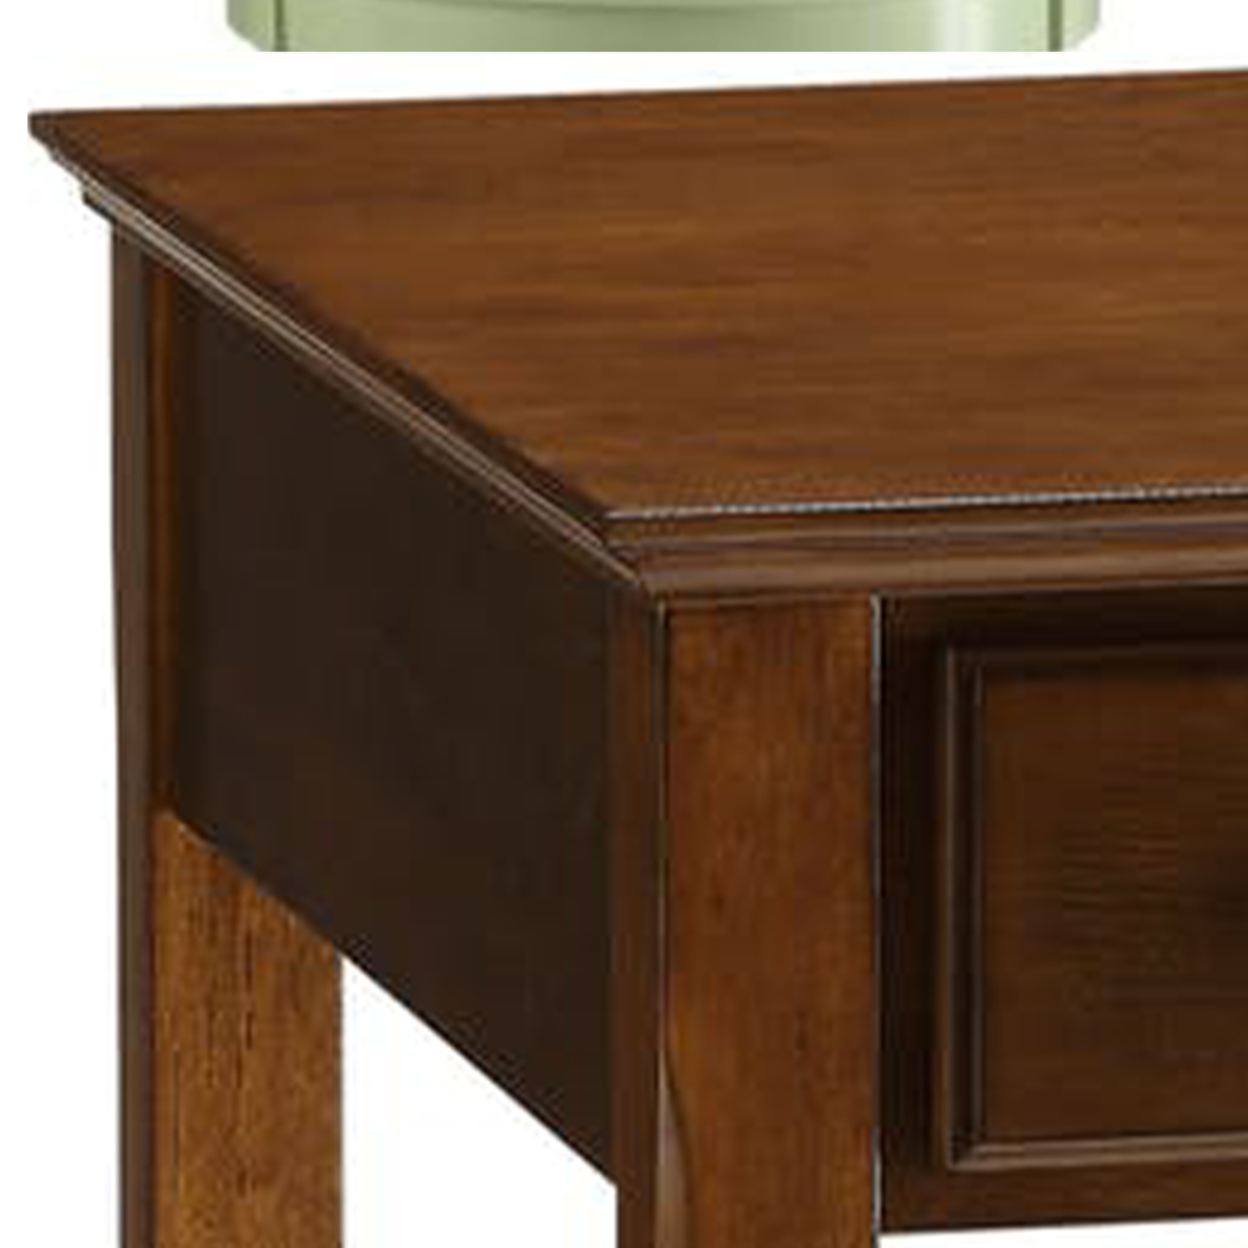 Smart Looking Side Table, Walnut Brown- Saltoro Sherpi